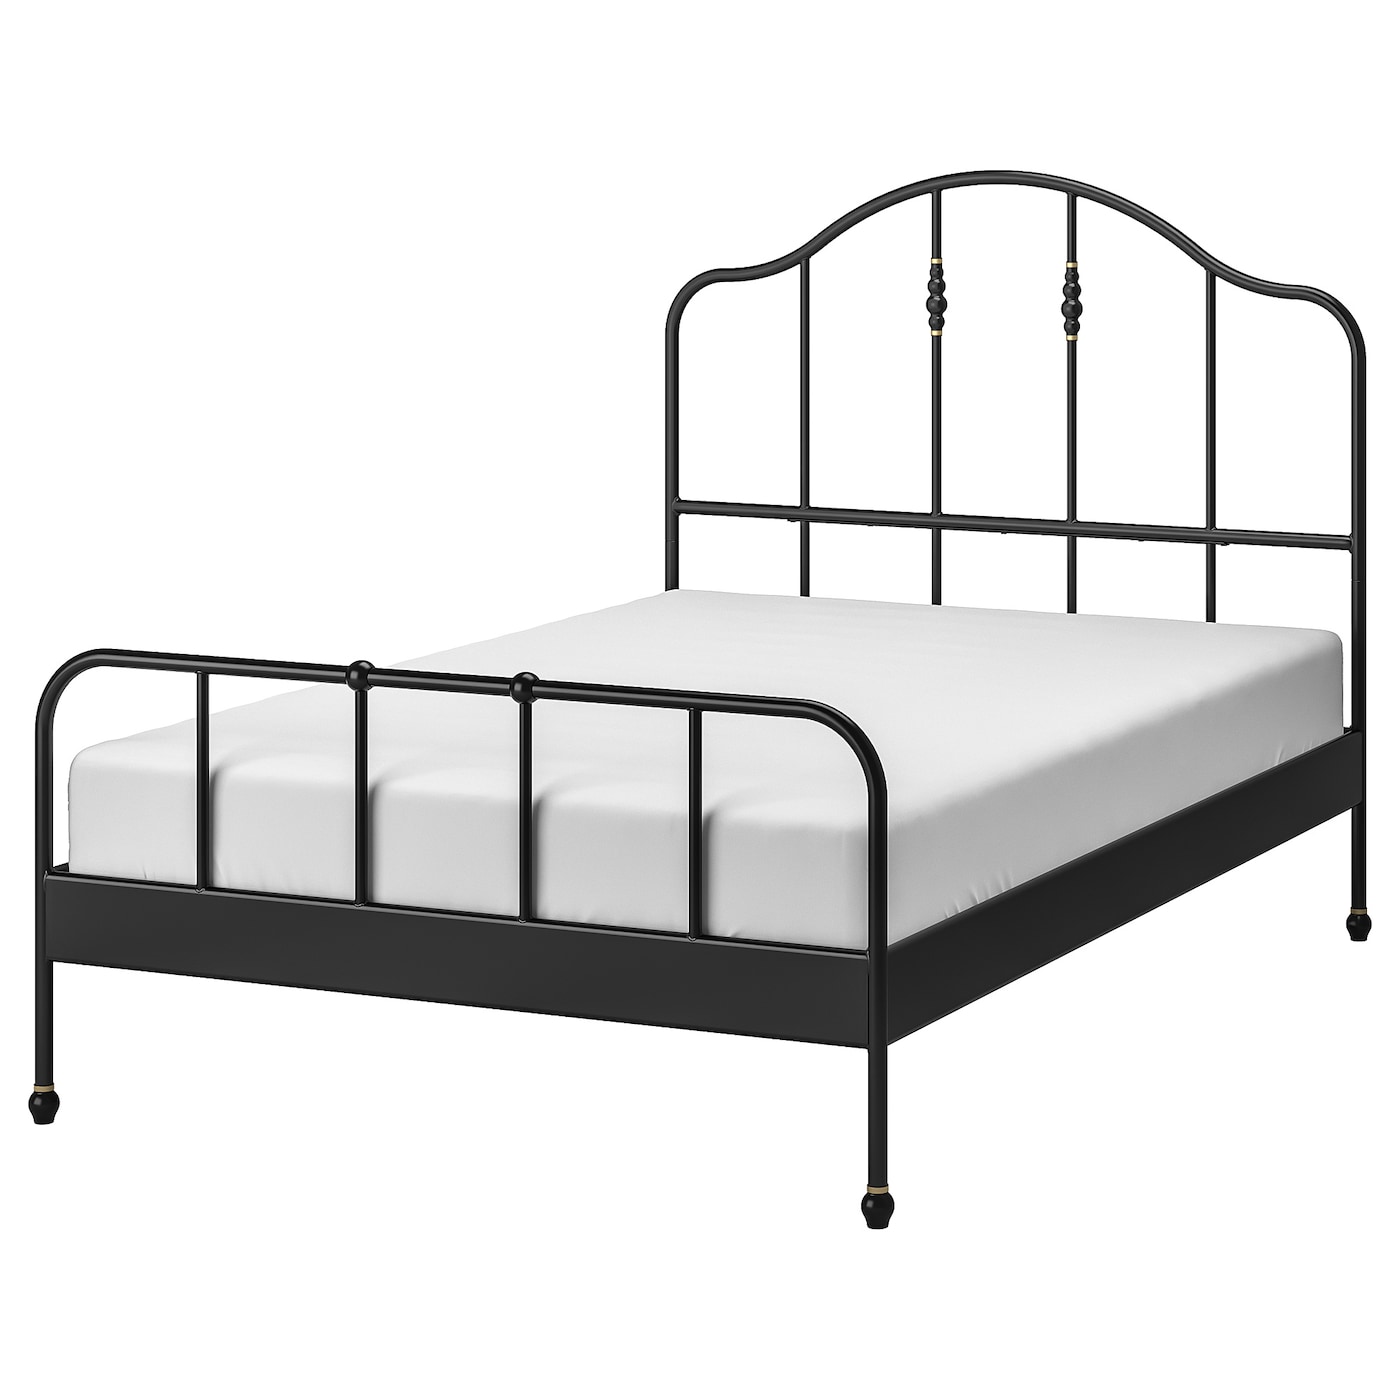 Каркас кровати -IKEA SAGSTUA, 200х140 см, черный, САГСТУА ИКЕА